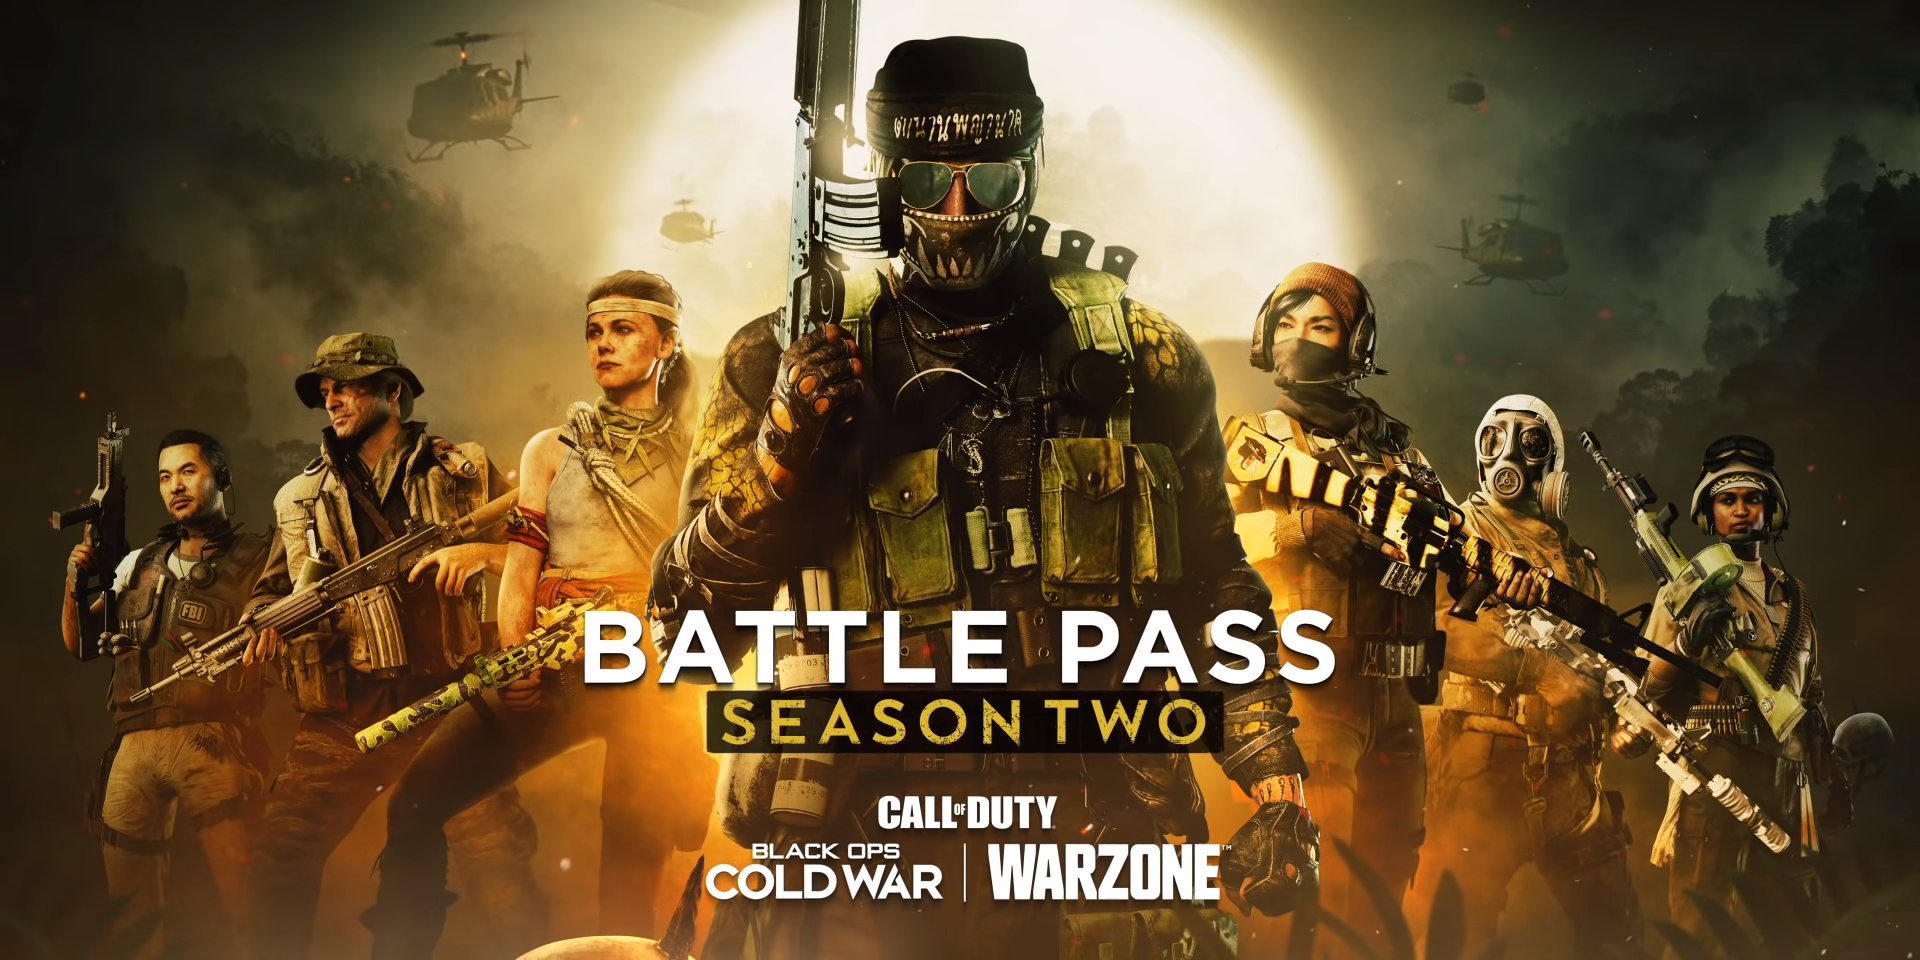 Conoce el Pase de Batalla de la Temporada Dos y los paquetes iniciales de Call of Duty®: Black Ops Cold War y Warzone